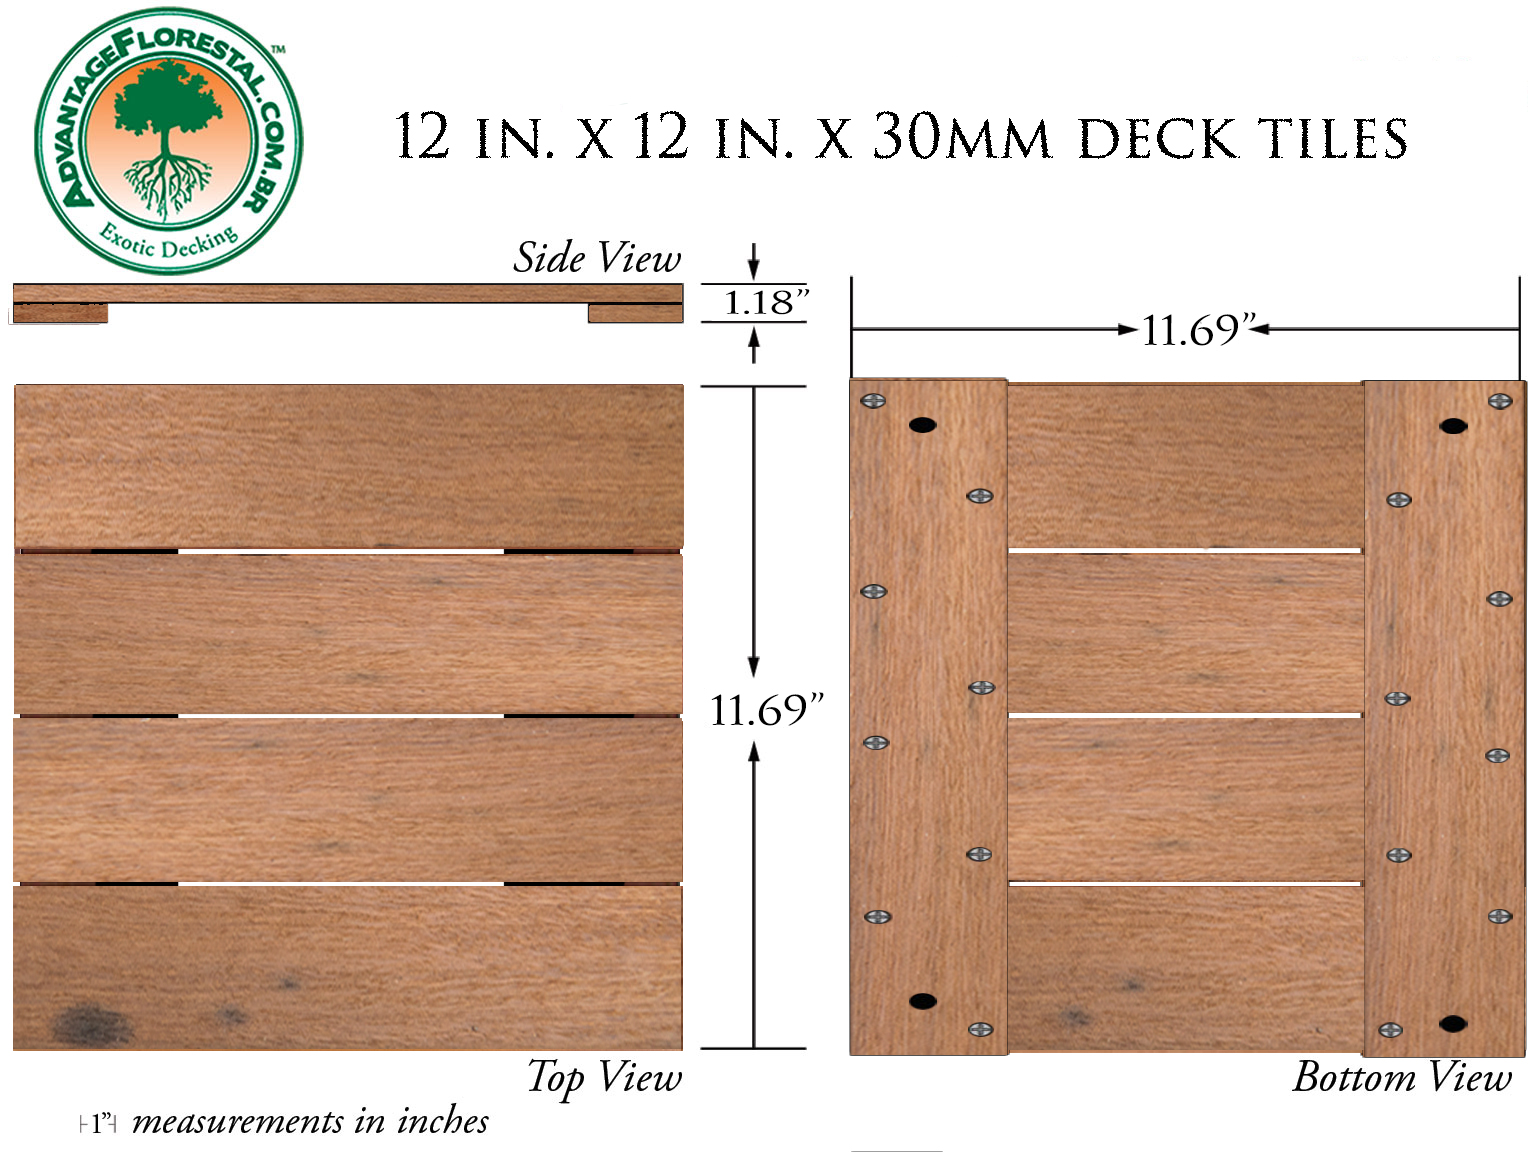 Itauba Deck Tile 12in. x 12 in. x 30mm